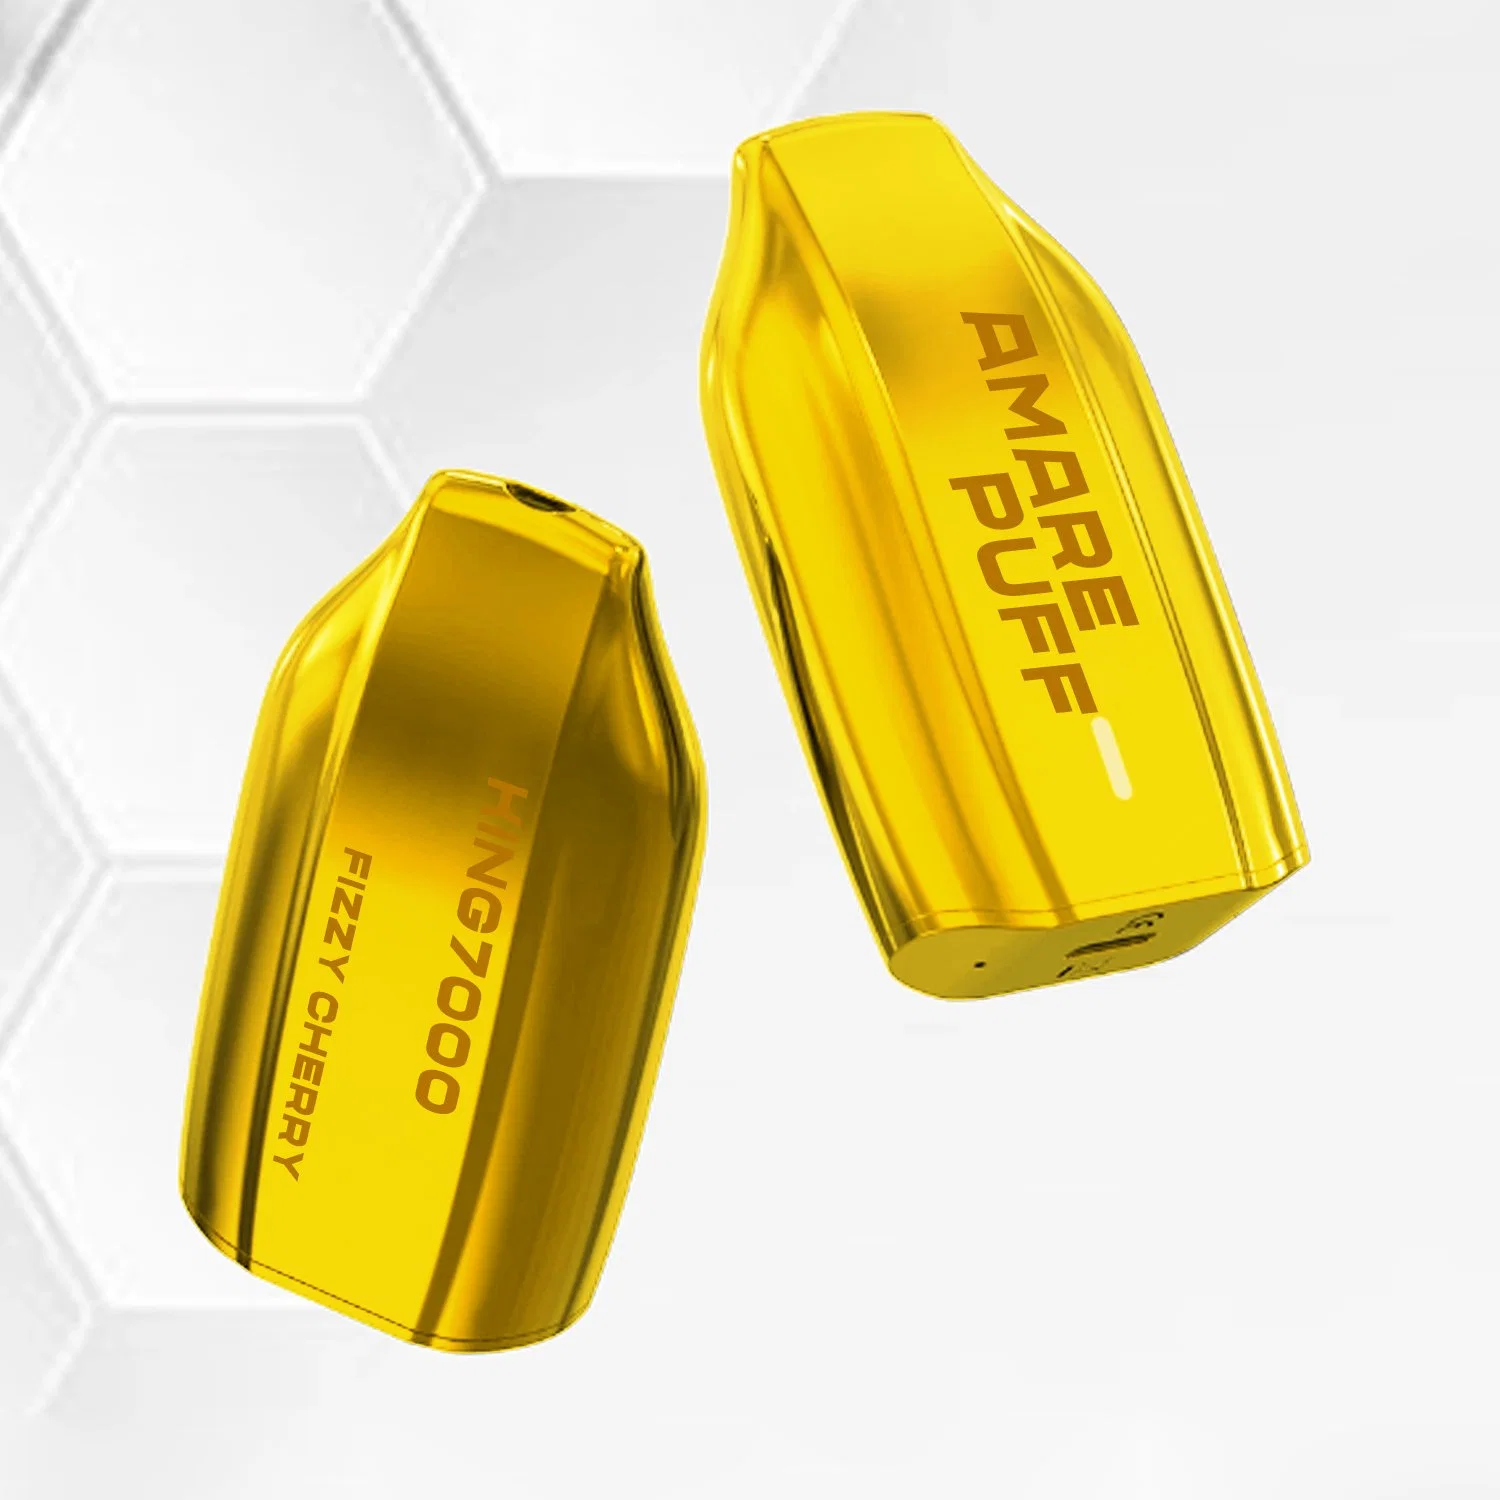 AMAR Puff King Wholesale mejor barra de Oro 7000 más Puffs Barras de lápiz VAPE desechables recargables